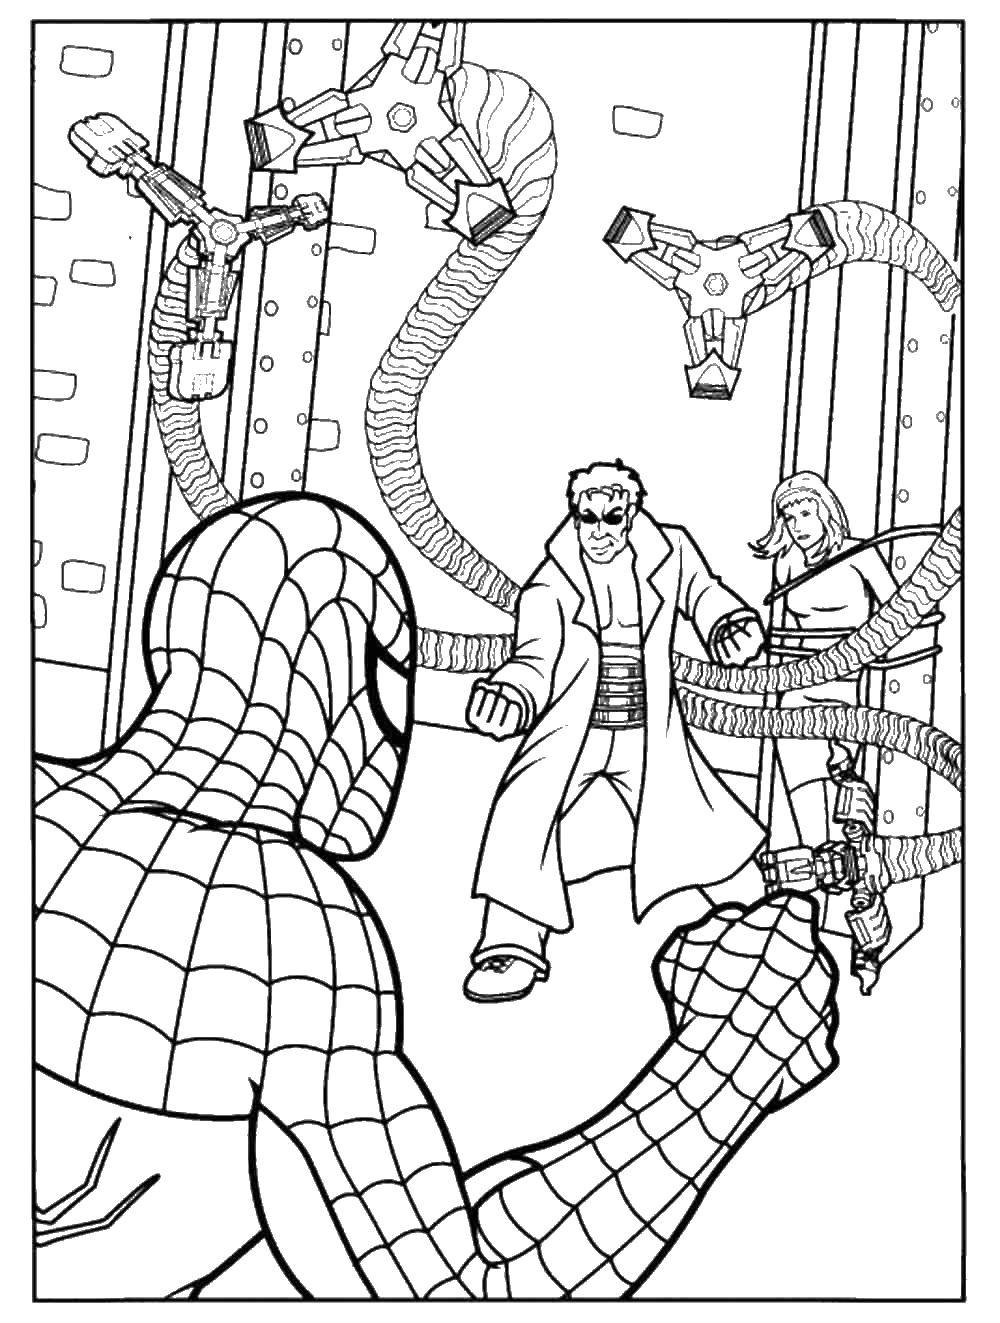 Название: Раскраска Человек паук сражается с врагом. Категория: Комиксы. Теги: Комиксы, Спайдермэн, Человек Паук.